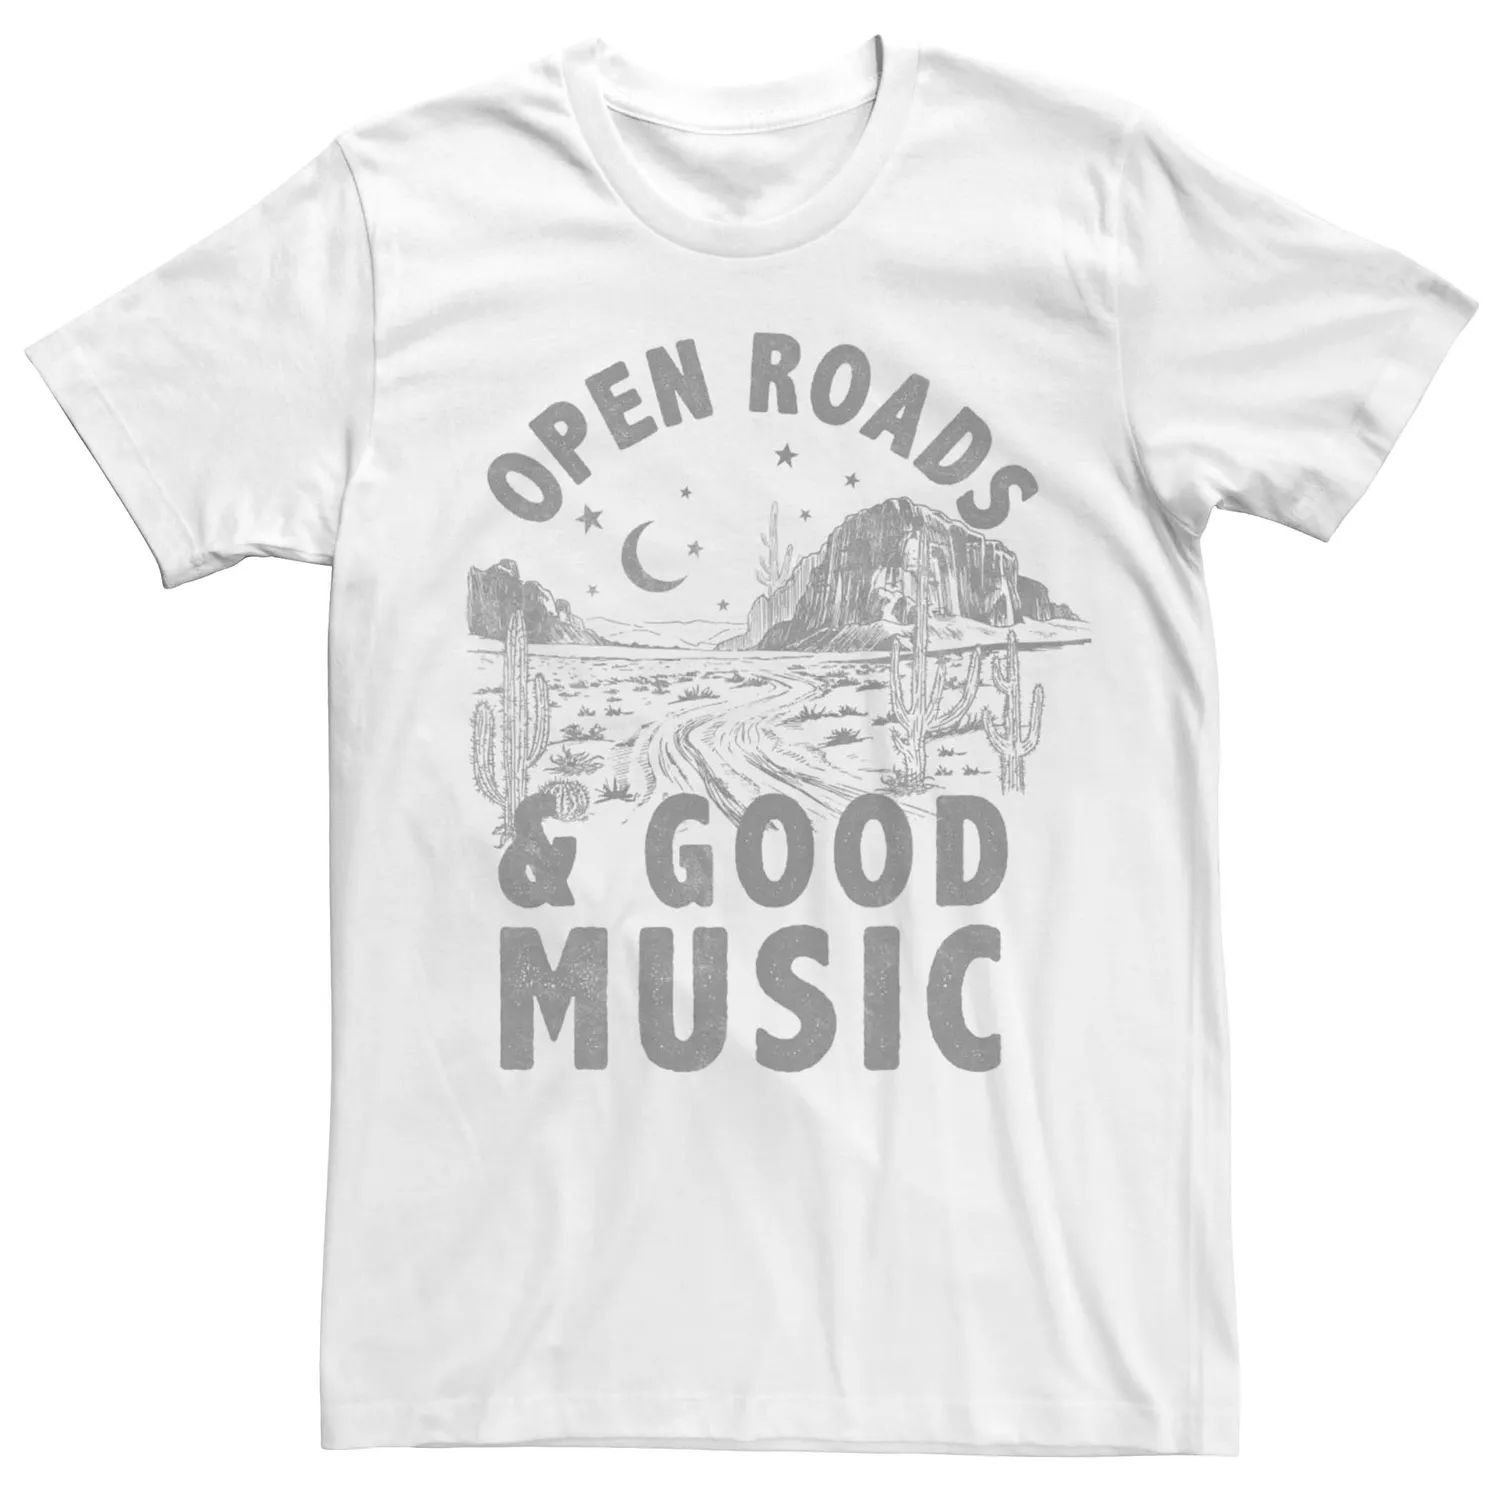 Мужская футболка с рисунком Open Roads Good Music Licensed Character